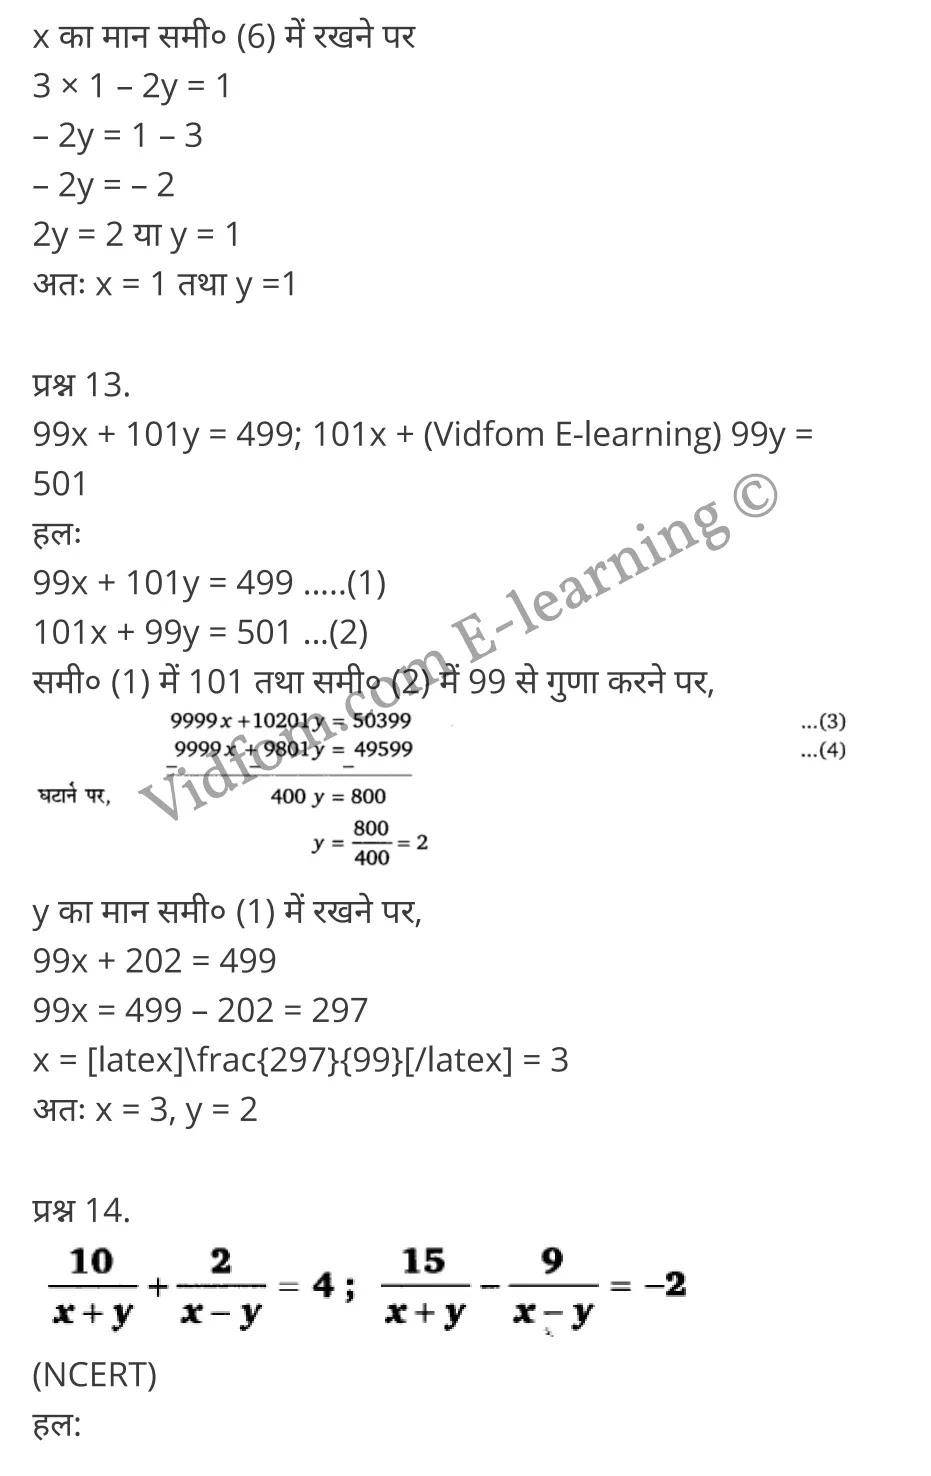 Class 10 Chapter 3 Pair of Linear Equation in Two Variables (दो चर वाले रैखिक समीकरण युग्म)  Chapter 3 Pair of Linear Equation in Two Variables Ex 3.1 Chapter 3 Pair of Linear Equation in Two Variables Ex 3.2 Chapter 3 Pair of Linear Equation in Two Variables Ex 3.3 Chapter 3 Pair of Linear Equation in Two Variables Ex 3.4 Chapter 3 Pair of Linear Equation in Two Variables Ex 3.5 कक्षा 10 बालाजी गणित  के नोट्स  हिंदी में एनसीईआरटी समाधान,     class 10 Balaji Maths Chapter 3,   class 10 Balaji Maths Chapter 3 ncert solutions in Hindi,   class 10 Balaji Maths Chapter 3 notes in hindi,   class 10 Balaji Maths Chapter 3 question answer,   class 10 Balaji Maths Chapter 3 notes,   class 10 Balaji Maths Chapter 3 class 10 Balaji Maths Chapter 3 in  hindi,    class 10 Balaji Maths Chapter 3 important questions in  hindi,   class 10 Balaji Maths Chapter 3 notes in hindi,    class 10 Balaji Maths Chapter 3 test,   class 10 Balaji Maths Chapter 3 pdf,   class 10 Balaji Maths Chapter 3 notes pdf,   class 10 Balaji Maths Chapter 3 exercise solutions,   class 10 Balaji Maths Chapter 3 notes study rankers,   class 10 Balaji Maths Chapter 3 notes,    class 10 Balaji Maths Chapter 3  class 10  notes pdf,   class 10 Balaji Maths Chapter 3 class 10  notes  ncert,   class 10 Balaji Maths Chapter 3 class 10 pdf,   class 10 Balaji Maths Chapter 3  book,   class 10 Balaji Maths Chapter 3 quiz class 10  ,    10  th class 10 Balaji Maths Chapter 3  book up board,   up board 10  th class 10 Balaji Maths Chapter 3 notes,  class 10 Balaji Maths,   class 10 Balaji Maths ncert solutions in Hindi,   class 10 Balaji Maths notes in hindi,   class 10 Balaji Maths question answer,   class 10 Balaji Maths notes,  class 10 Balaji Maths class 10 Balaji Maths Chapter 3 in  hindi,    class 10 Balaji Maths important questions in  hindi,   class 10 Balaji Maths notes in hindi,    class 10 Balaji Maths test,  class 10 Balaji Maths class 10 Balaji Maths Chapter 3 pdf,   class 10 Balaji Maths notes pdf,   class 10 Balaji Maths exercise solutions,   class 10 Balaji Maths,  class 10 Balaji Maths notes study rankers,   class 10 Balaji Maths notes,  class 10 Balaji Maths notes,   class 10 Balaji Maths  class 10  notes pdf,   class 10 Balaji Maths class 10  notes  ncert,   class 10 Balaji Maths class 10 pdf,   class 10 Balaji Maths  book,  class 10 Balaji Maths quiz class 10  ,  10  th class 10 Balaji Maths    book up board,    up board 10  th class 10 Balaji Maths notes,      कक्षा 10 बालाजी गणित अध्याय 3 ,  कक्षा 10 बालाजी गणित, कक्षा 10 बालाजी गणित अध्याय 3  के नोट्स हिंदी में,  कक्षा 10 का हिंदी अध्याय 3 का प्रश्न उत्तर,  कक्षा 10 बालाजी गणित अध्याय 3  के नोट्स,  10 कक्षा बालाजी गणित  हिंदी में, कक्षा 10 बालाजी गणित अध्याय 3  हिंदी में,  कक्षा 10 बालाजी गणित अध्याय 3  महत्वपूर्ण प्रश्न हिंदी में, कक्षा 10   हिंदी के नोट्स  हिंदी में, बालाजी गणित हिंदी में  कक्षा 10 नोट्स pdf,    बालाजी गणित हिंदी में  कक्षा 10 नोट्स 2021 ncert,   बालाजी गणित हिंदी  कक्षा 10 pdf,   बालाजी गणित हिंदी में  पुस्तक,   बालाजी गणित हिंदी में की बुक,   बालाजी गणित हिंदी में  प्रश्नोत्तरी class 10 ,  बिहार बोर्ड 10  पुस्तक वीं हिंदी नोट्स,    बालाजी गणित कक्षा 10 नोट्स 2021 ncert,   बालाजी गणित  कक्षा 10 pdf,   बालाजी गणित  पुस्तक,   बालाजी गणित  प्रश्नोत्तरी class 10, कक्षा 10 बालाजी गणित,  कक्षा 10 बालाजी गणित  के नोट्स हिंदी में,  कक्षा 10 का हिंदी का प्रश्न उत्तर,  कक्षा 10 बालाजी गणित  के नोट्स,  10 कक्षा हिंदी 2021  हिंदी में, कक्षा 10 बालाजी गणित  हिंदी में,  कक्षा 10 बालाजी गणित  महत्वपूर्ण प्रश्न हिंदी में, कक्षा 10 बालाजी गणित  नोट्स  हिंदी में,